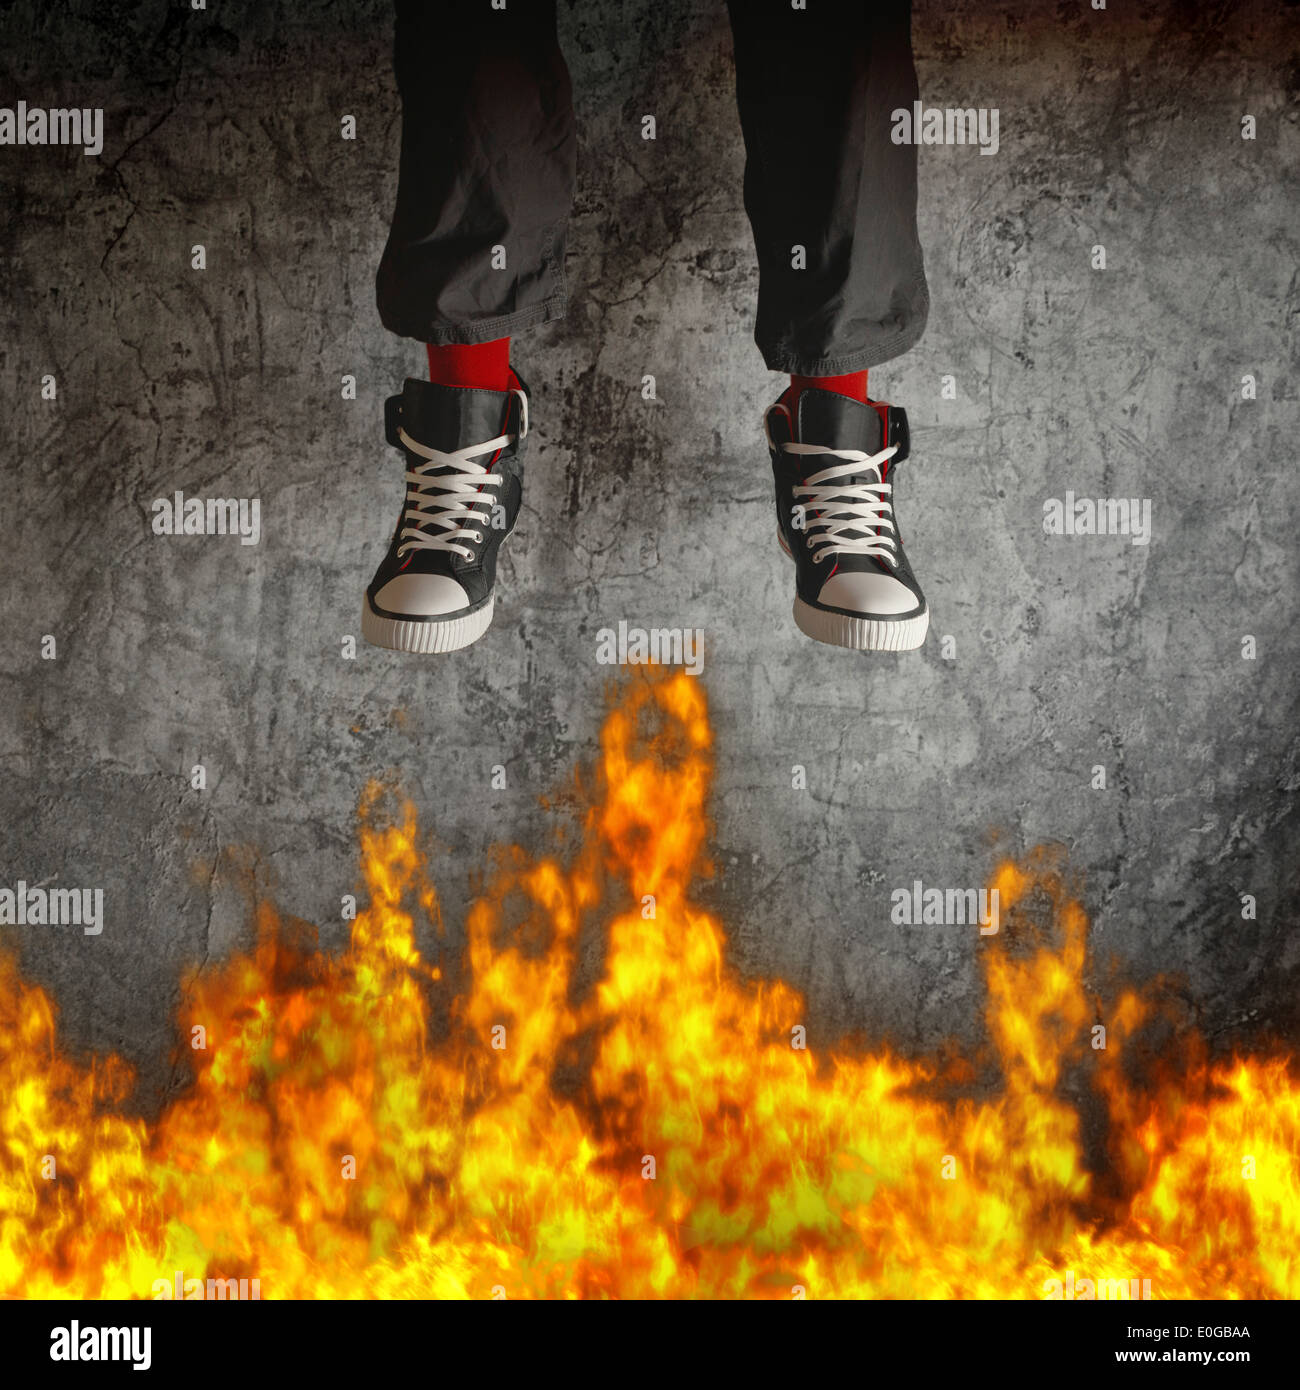 Junger Mann in Turnschuhen wird über Feuer Flammen springen. Konzept der Rücksichtslosigkeit und Risiko. Stockfoto